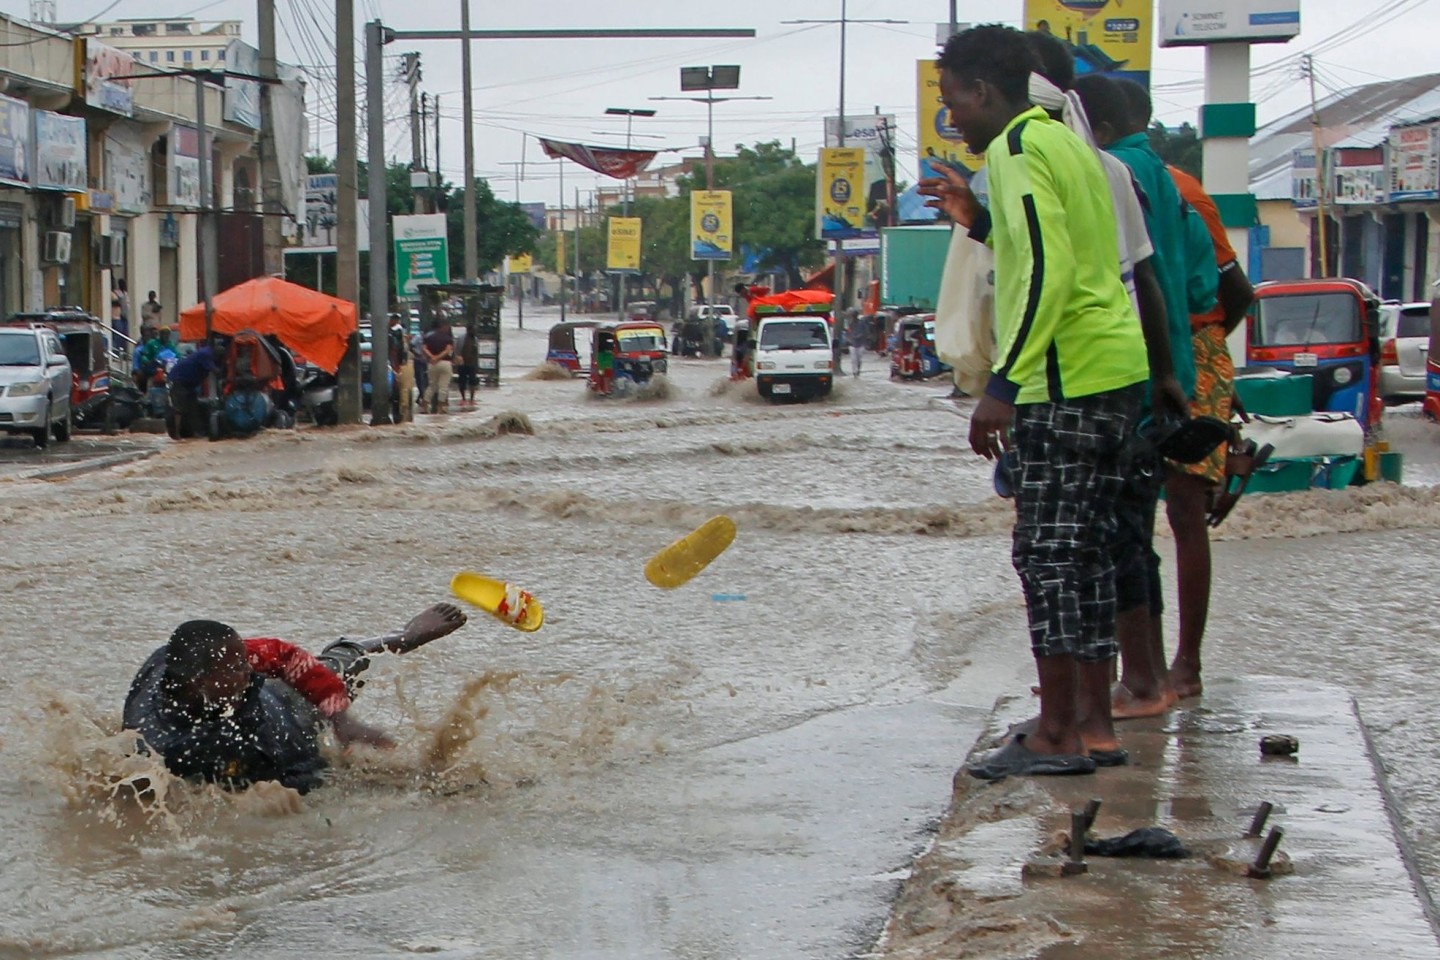 Ein Mann rutscht nach starken Regenfällen im Hochwasser aus.